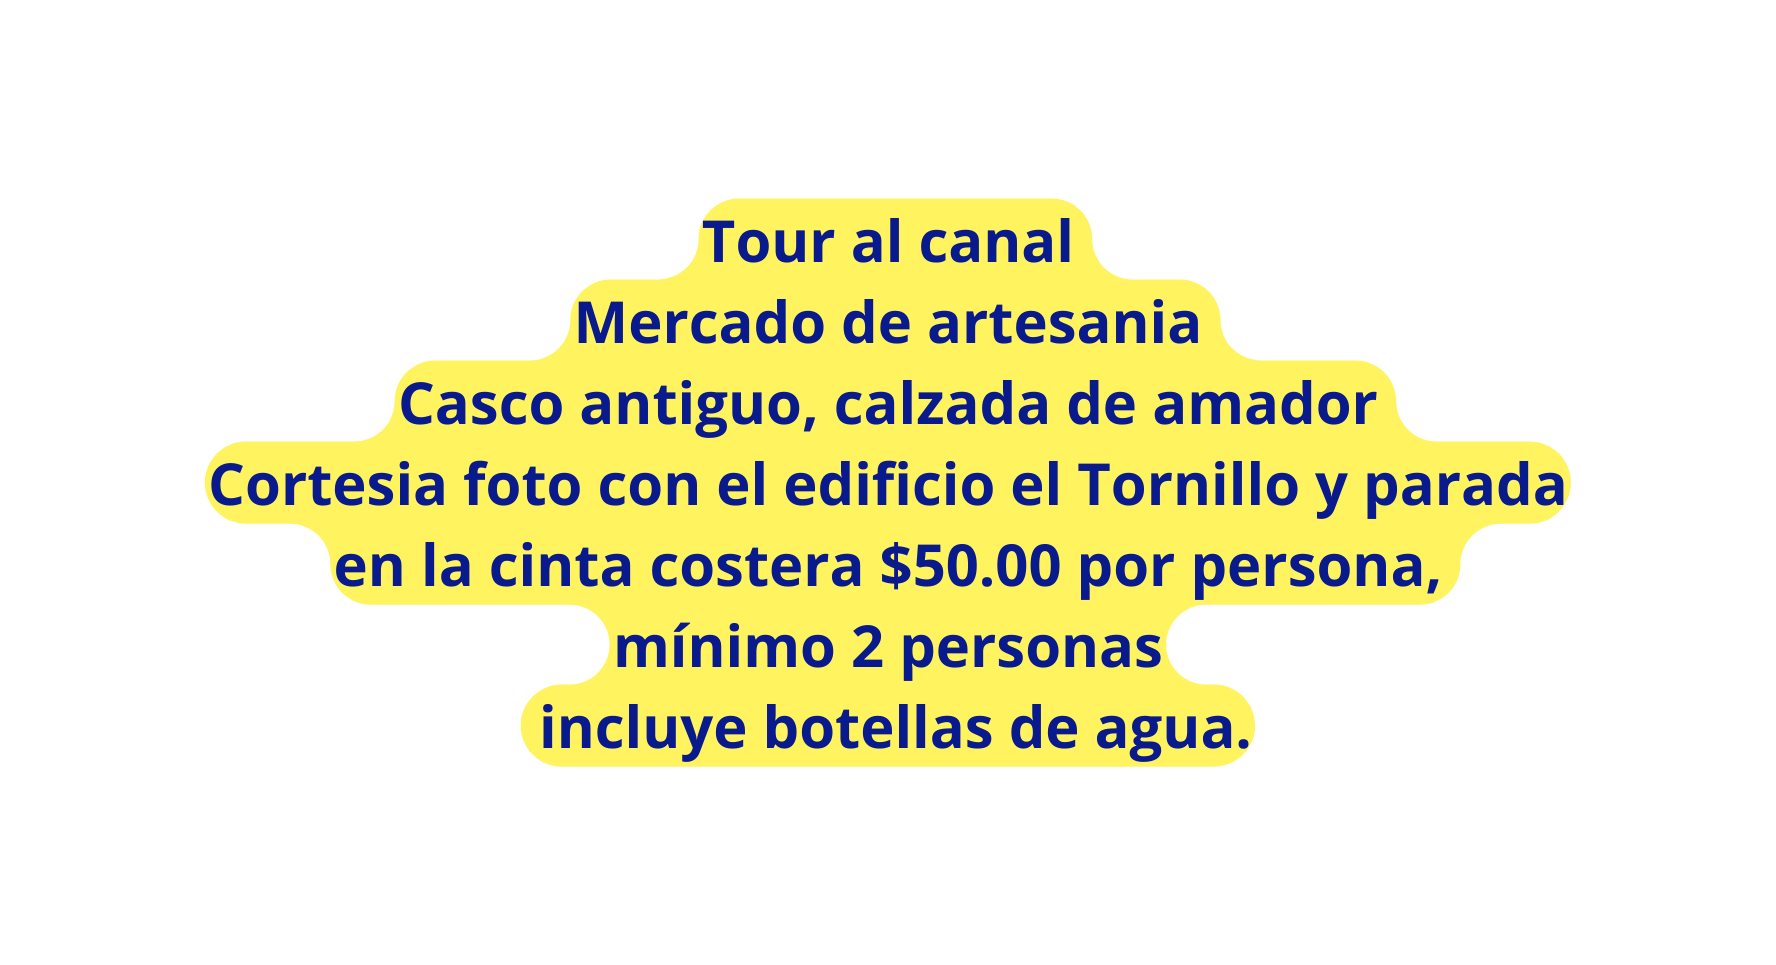 Tour al canal Mercado de artesania Casco antiguo calzada de amador Cortesia foto con el edificio el Tornillo y parada en la cinta costera 50 00 por persona mínimo 2 personas incluye botellas de agua